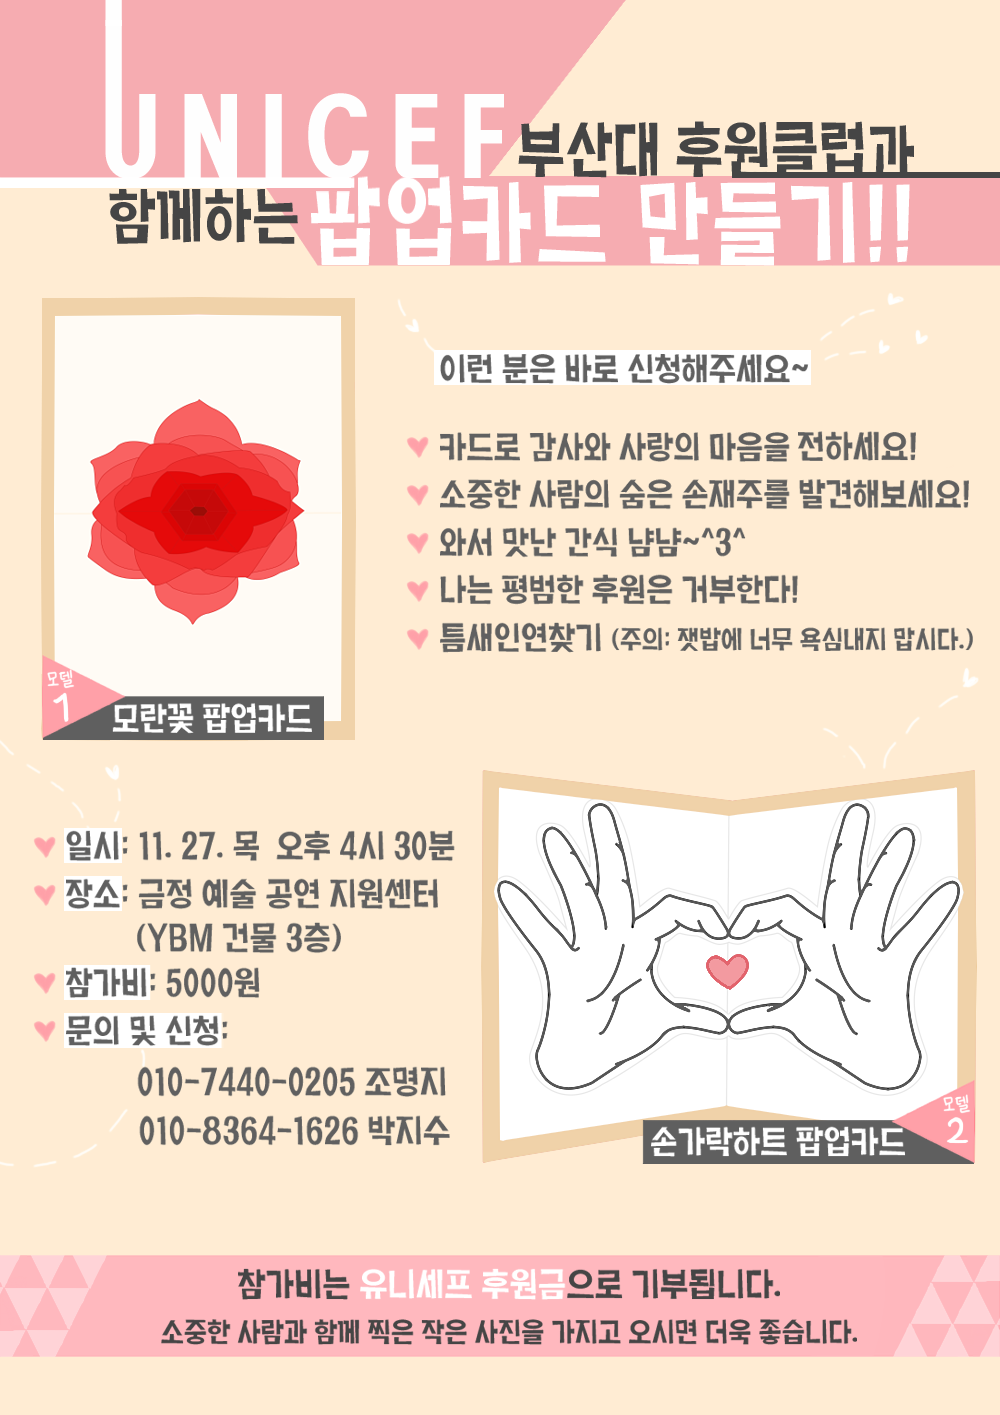 1416021265587.png : 부산대학교 유니세프 후원클럽과 함께하는 팝업카드 만들기!!!!